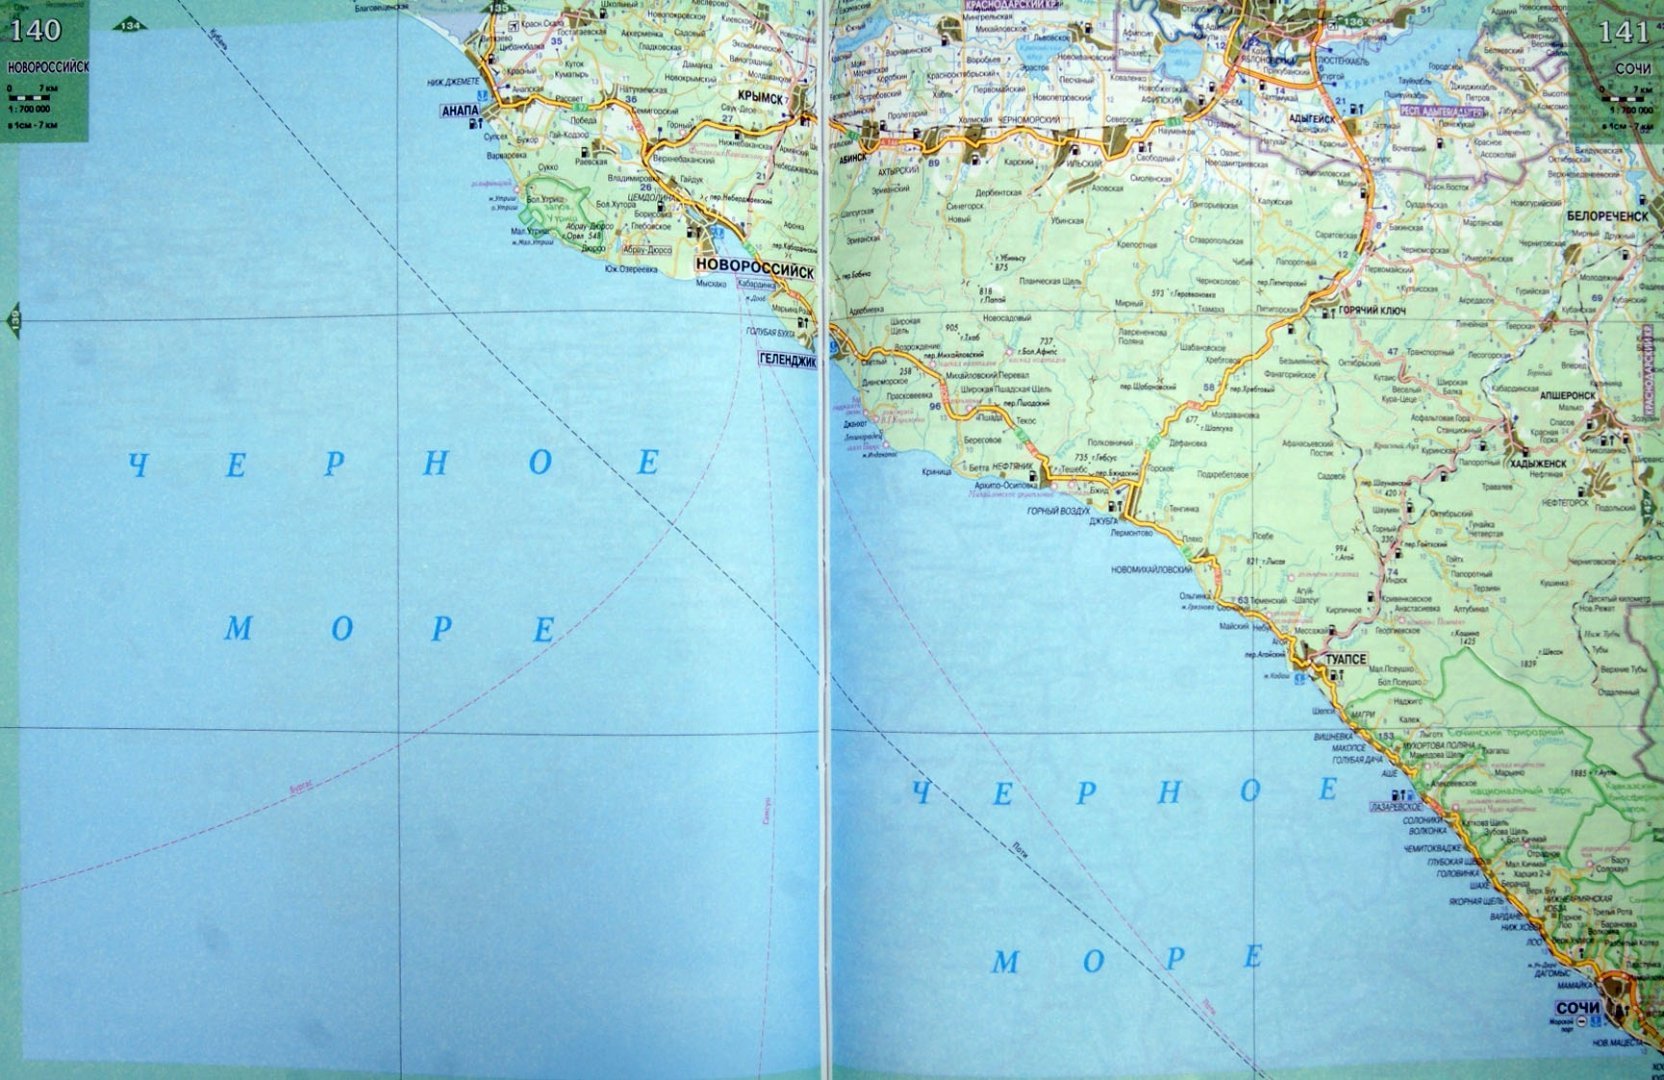 анапа на карте краснодарского края фото